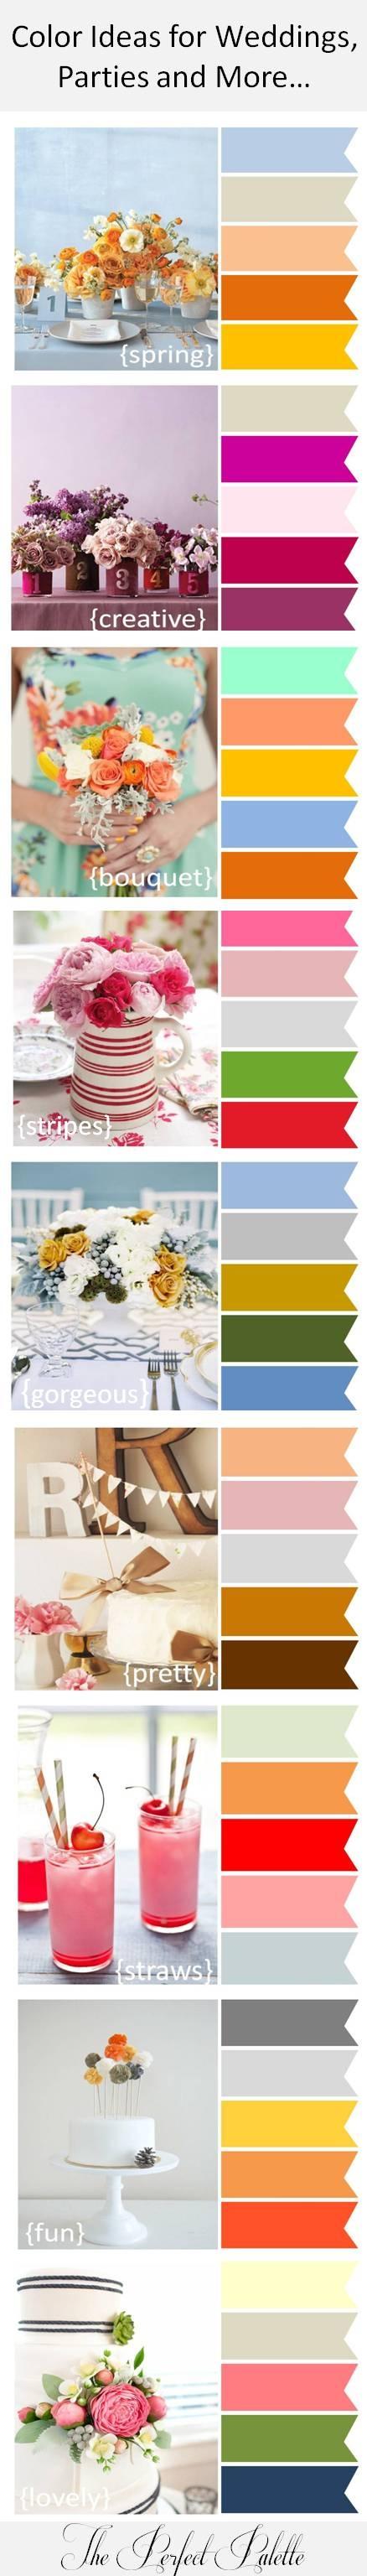 Mariage - Idées de couleurs pour des mariages, des fêtes et plus ...